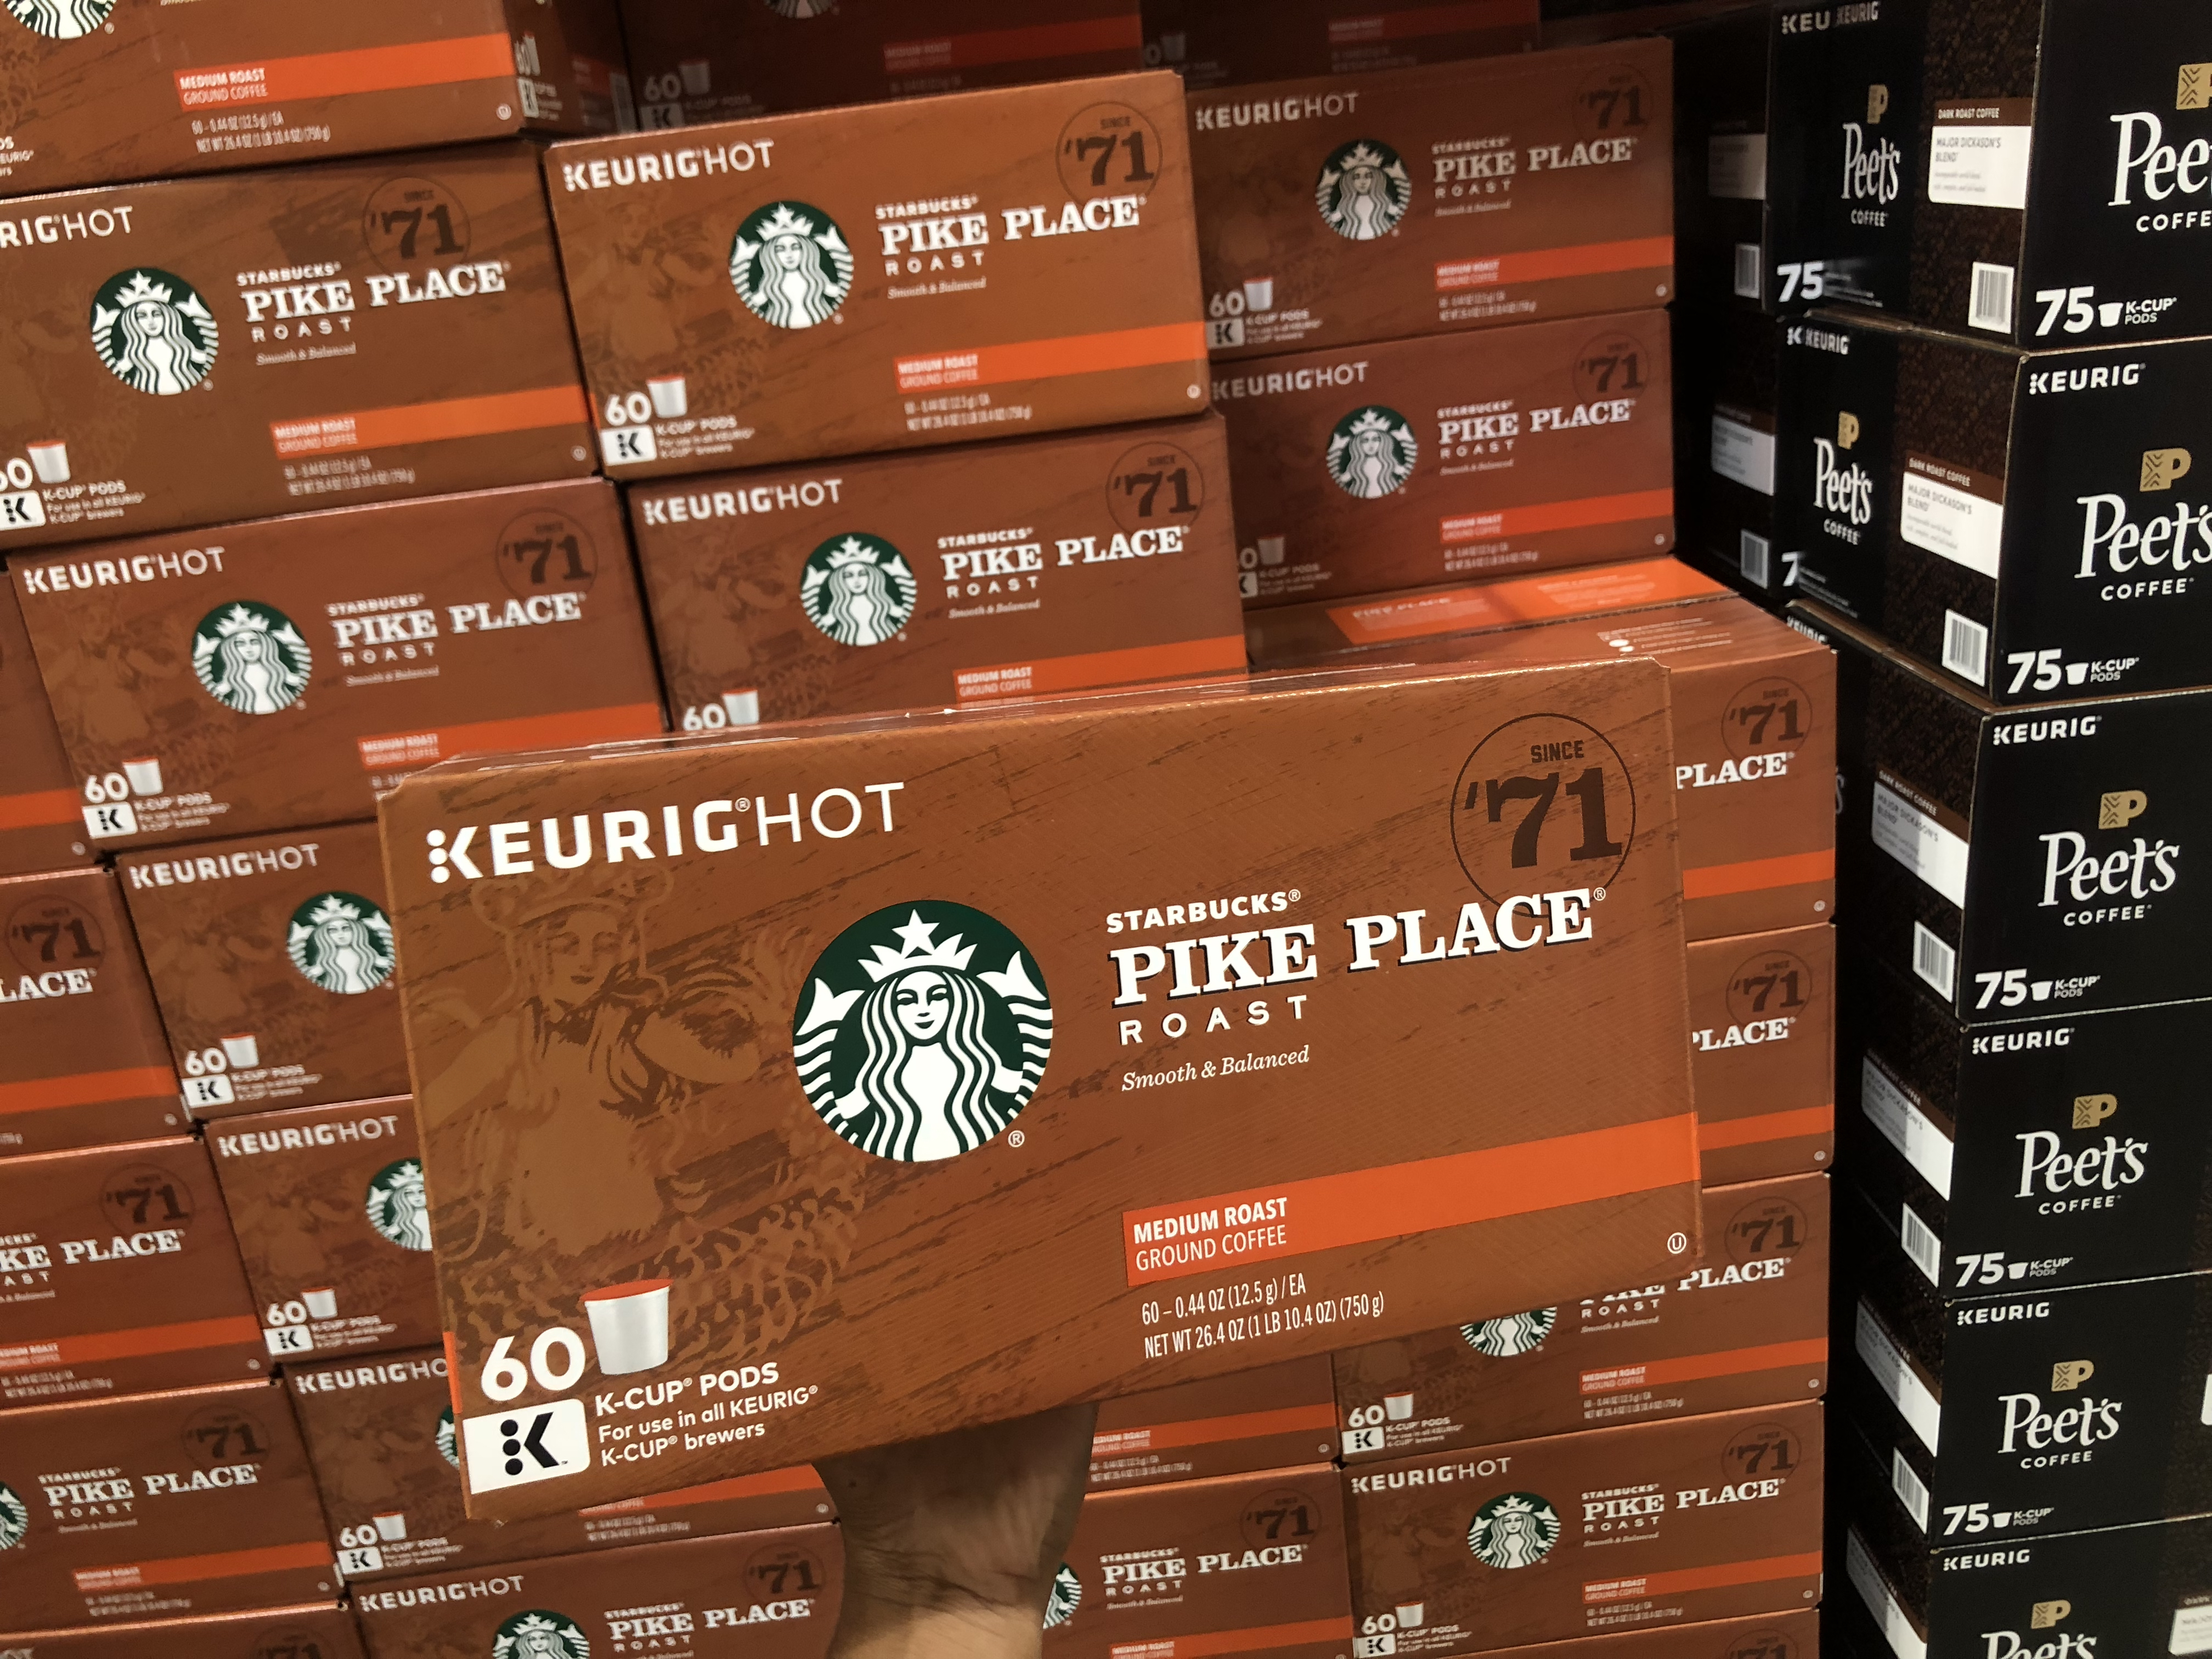 October 2018 keto Costco deals – Starbucks at Costco